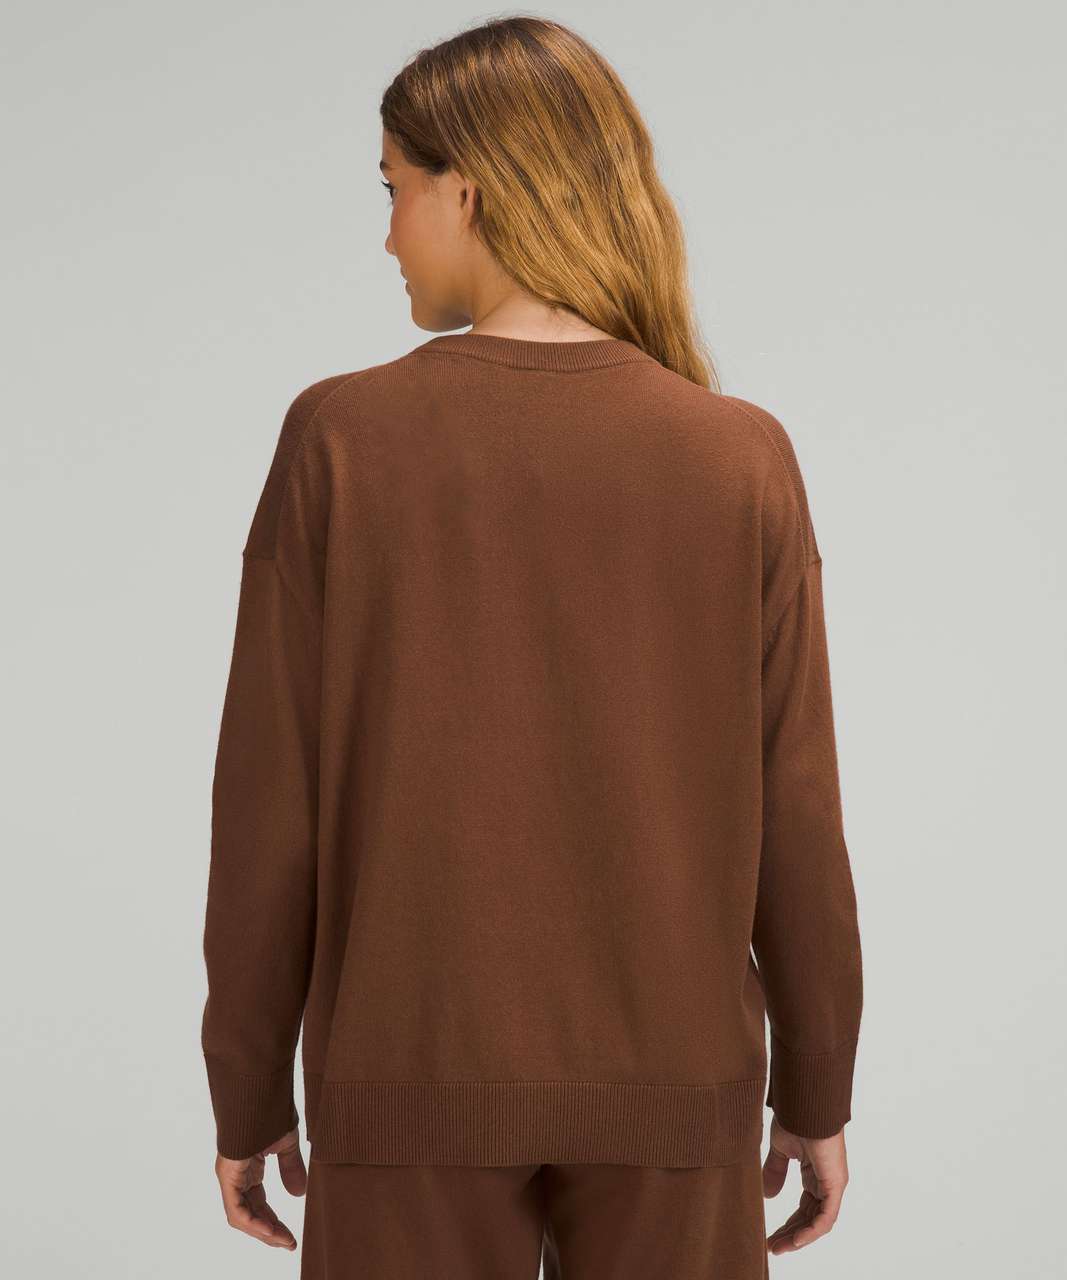 Sweatshirt Lululemon Brown size 10 US in Synthetic - 30550235